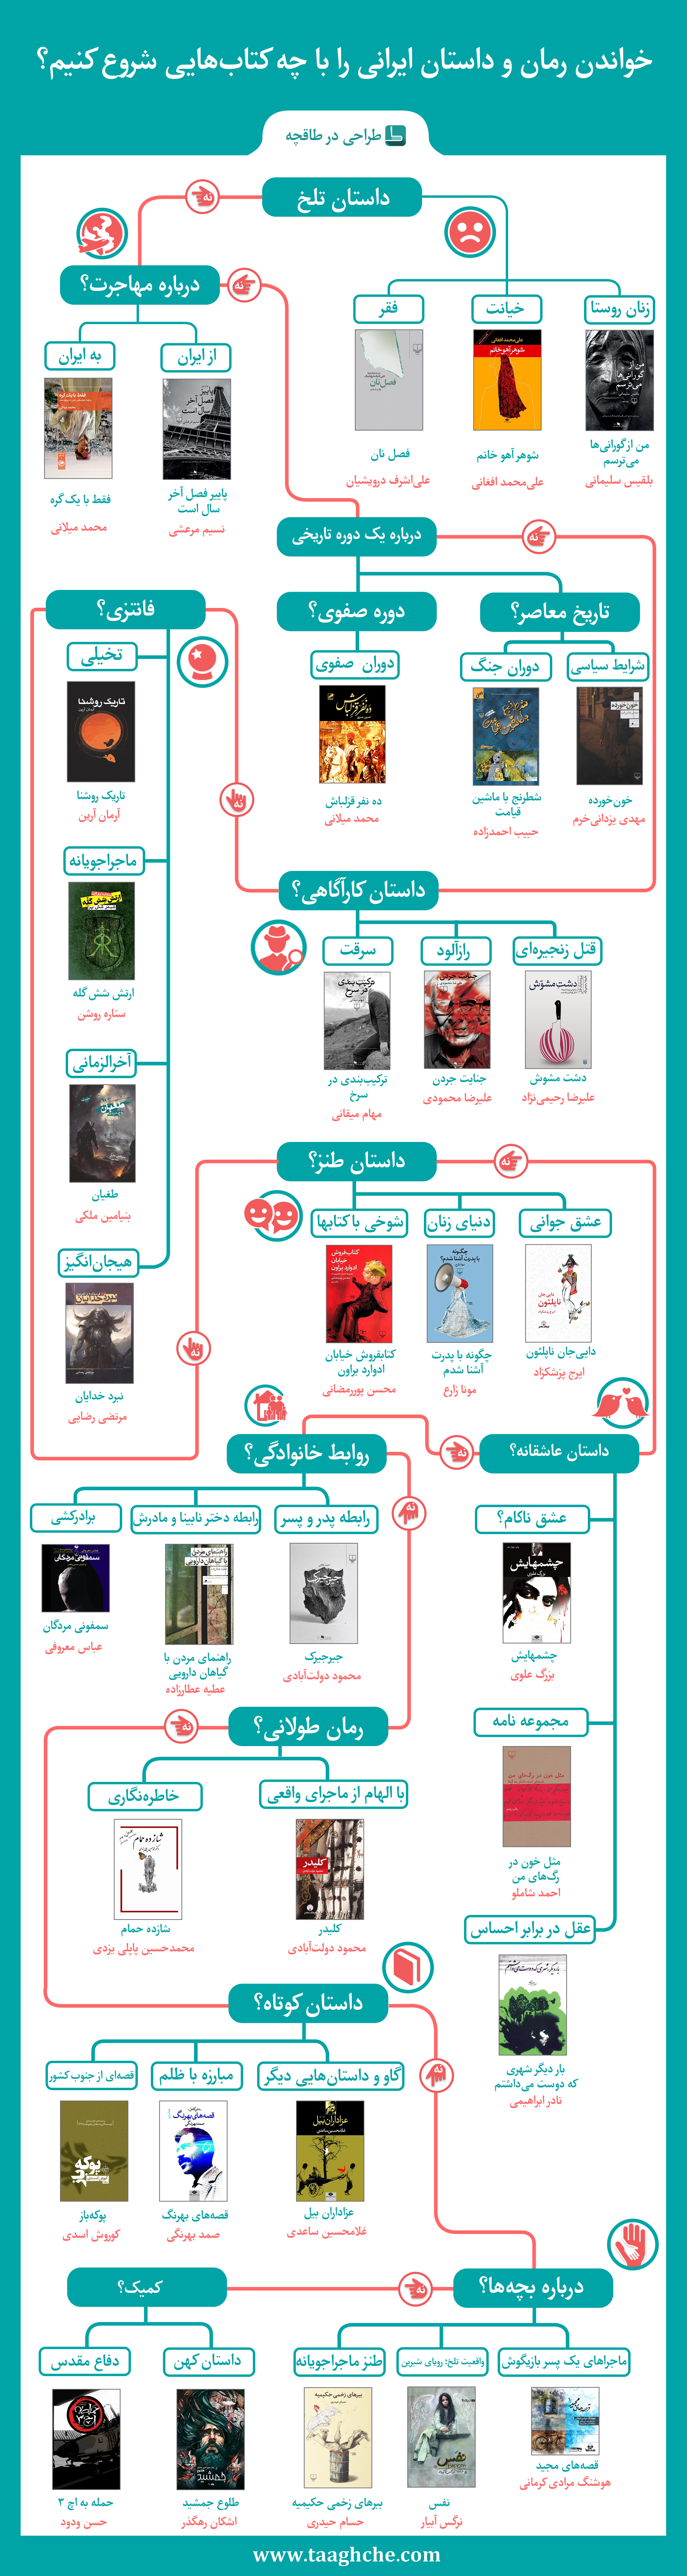 معرفی کتاب های مفید برای مطالعه از میان رمان و داستان های ایرانی